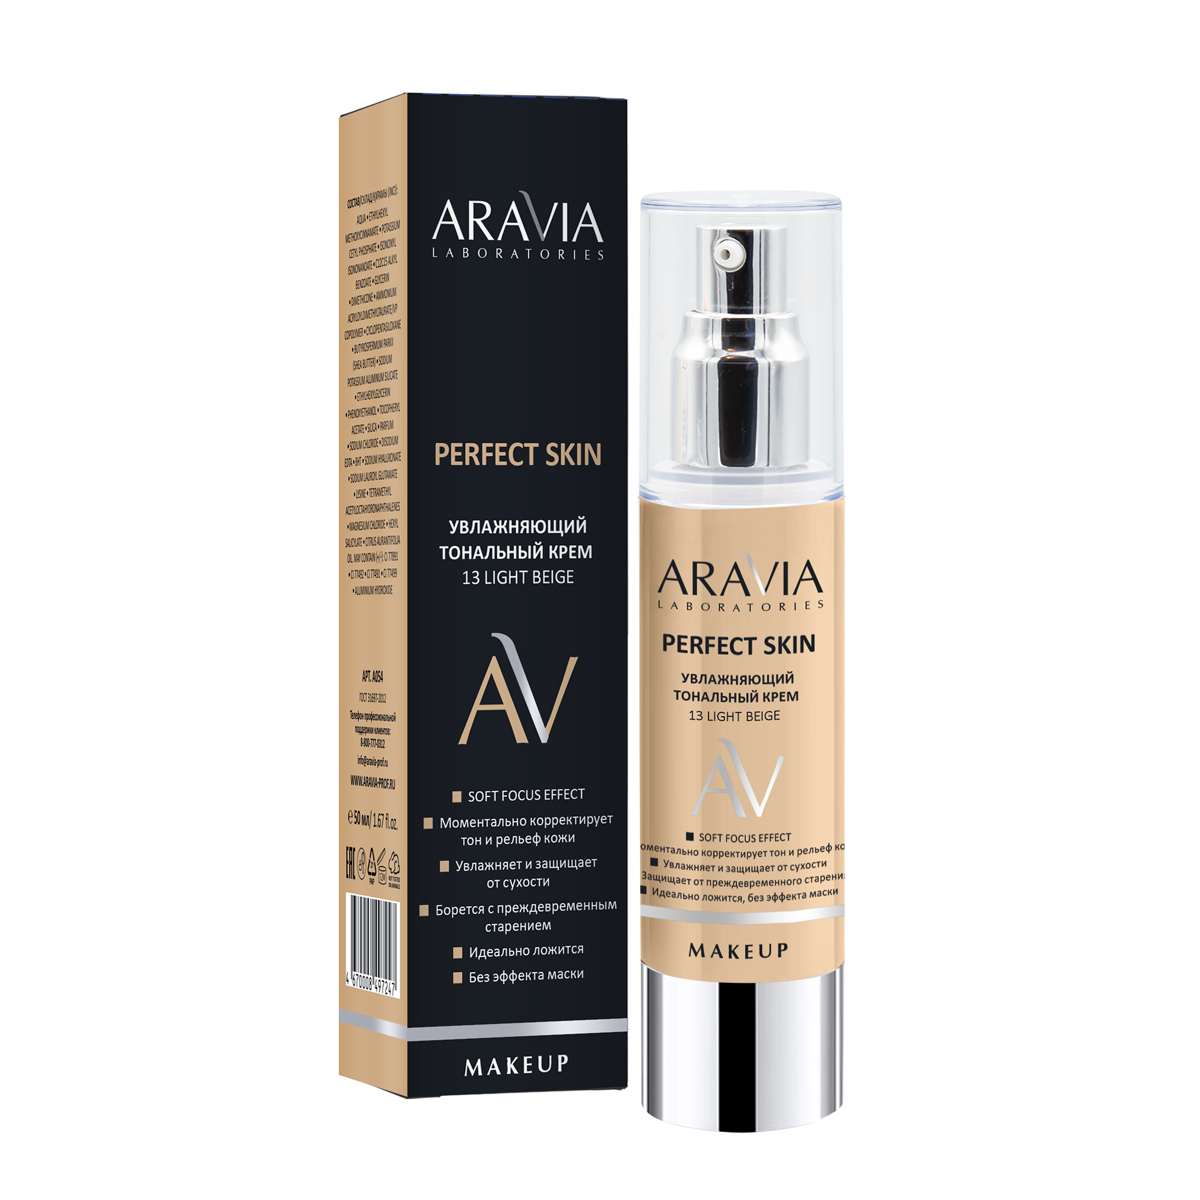 Aravia Laboratories Увлажняющий тональный крем Perfect Skin 13 Light Beige, 50 мл (Aravia Laboratories, Уход за лицом)